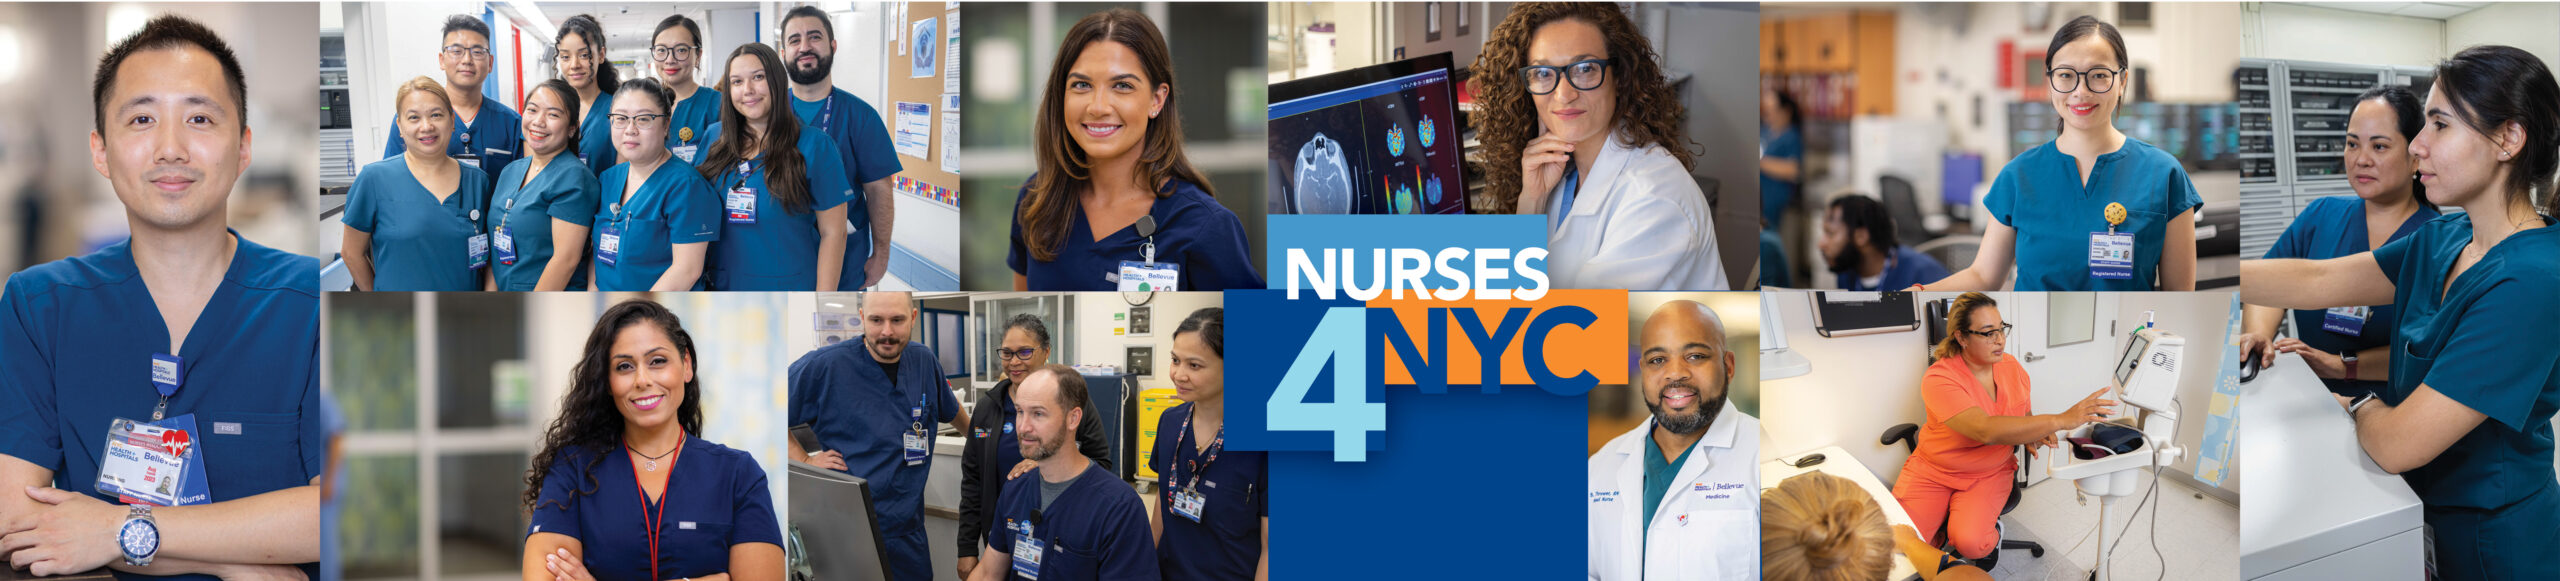 Nurses4nycRecruitment WebBanner Scaled 